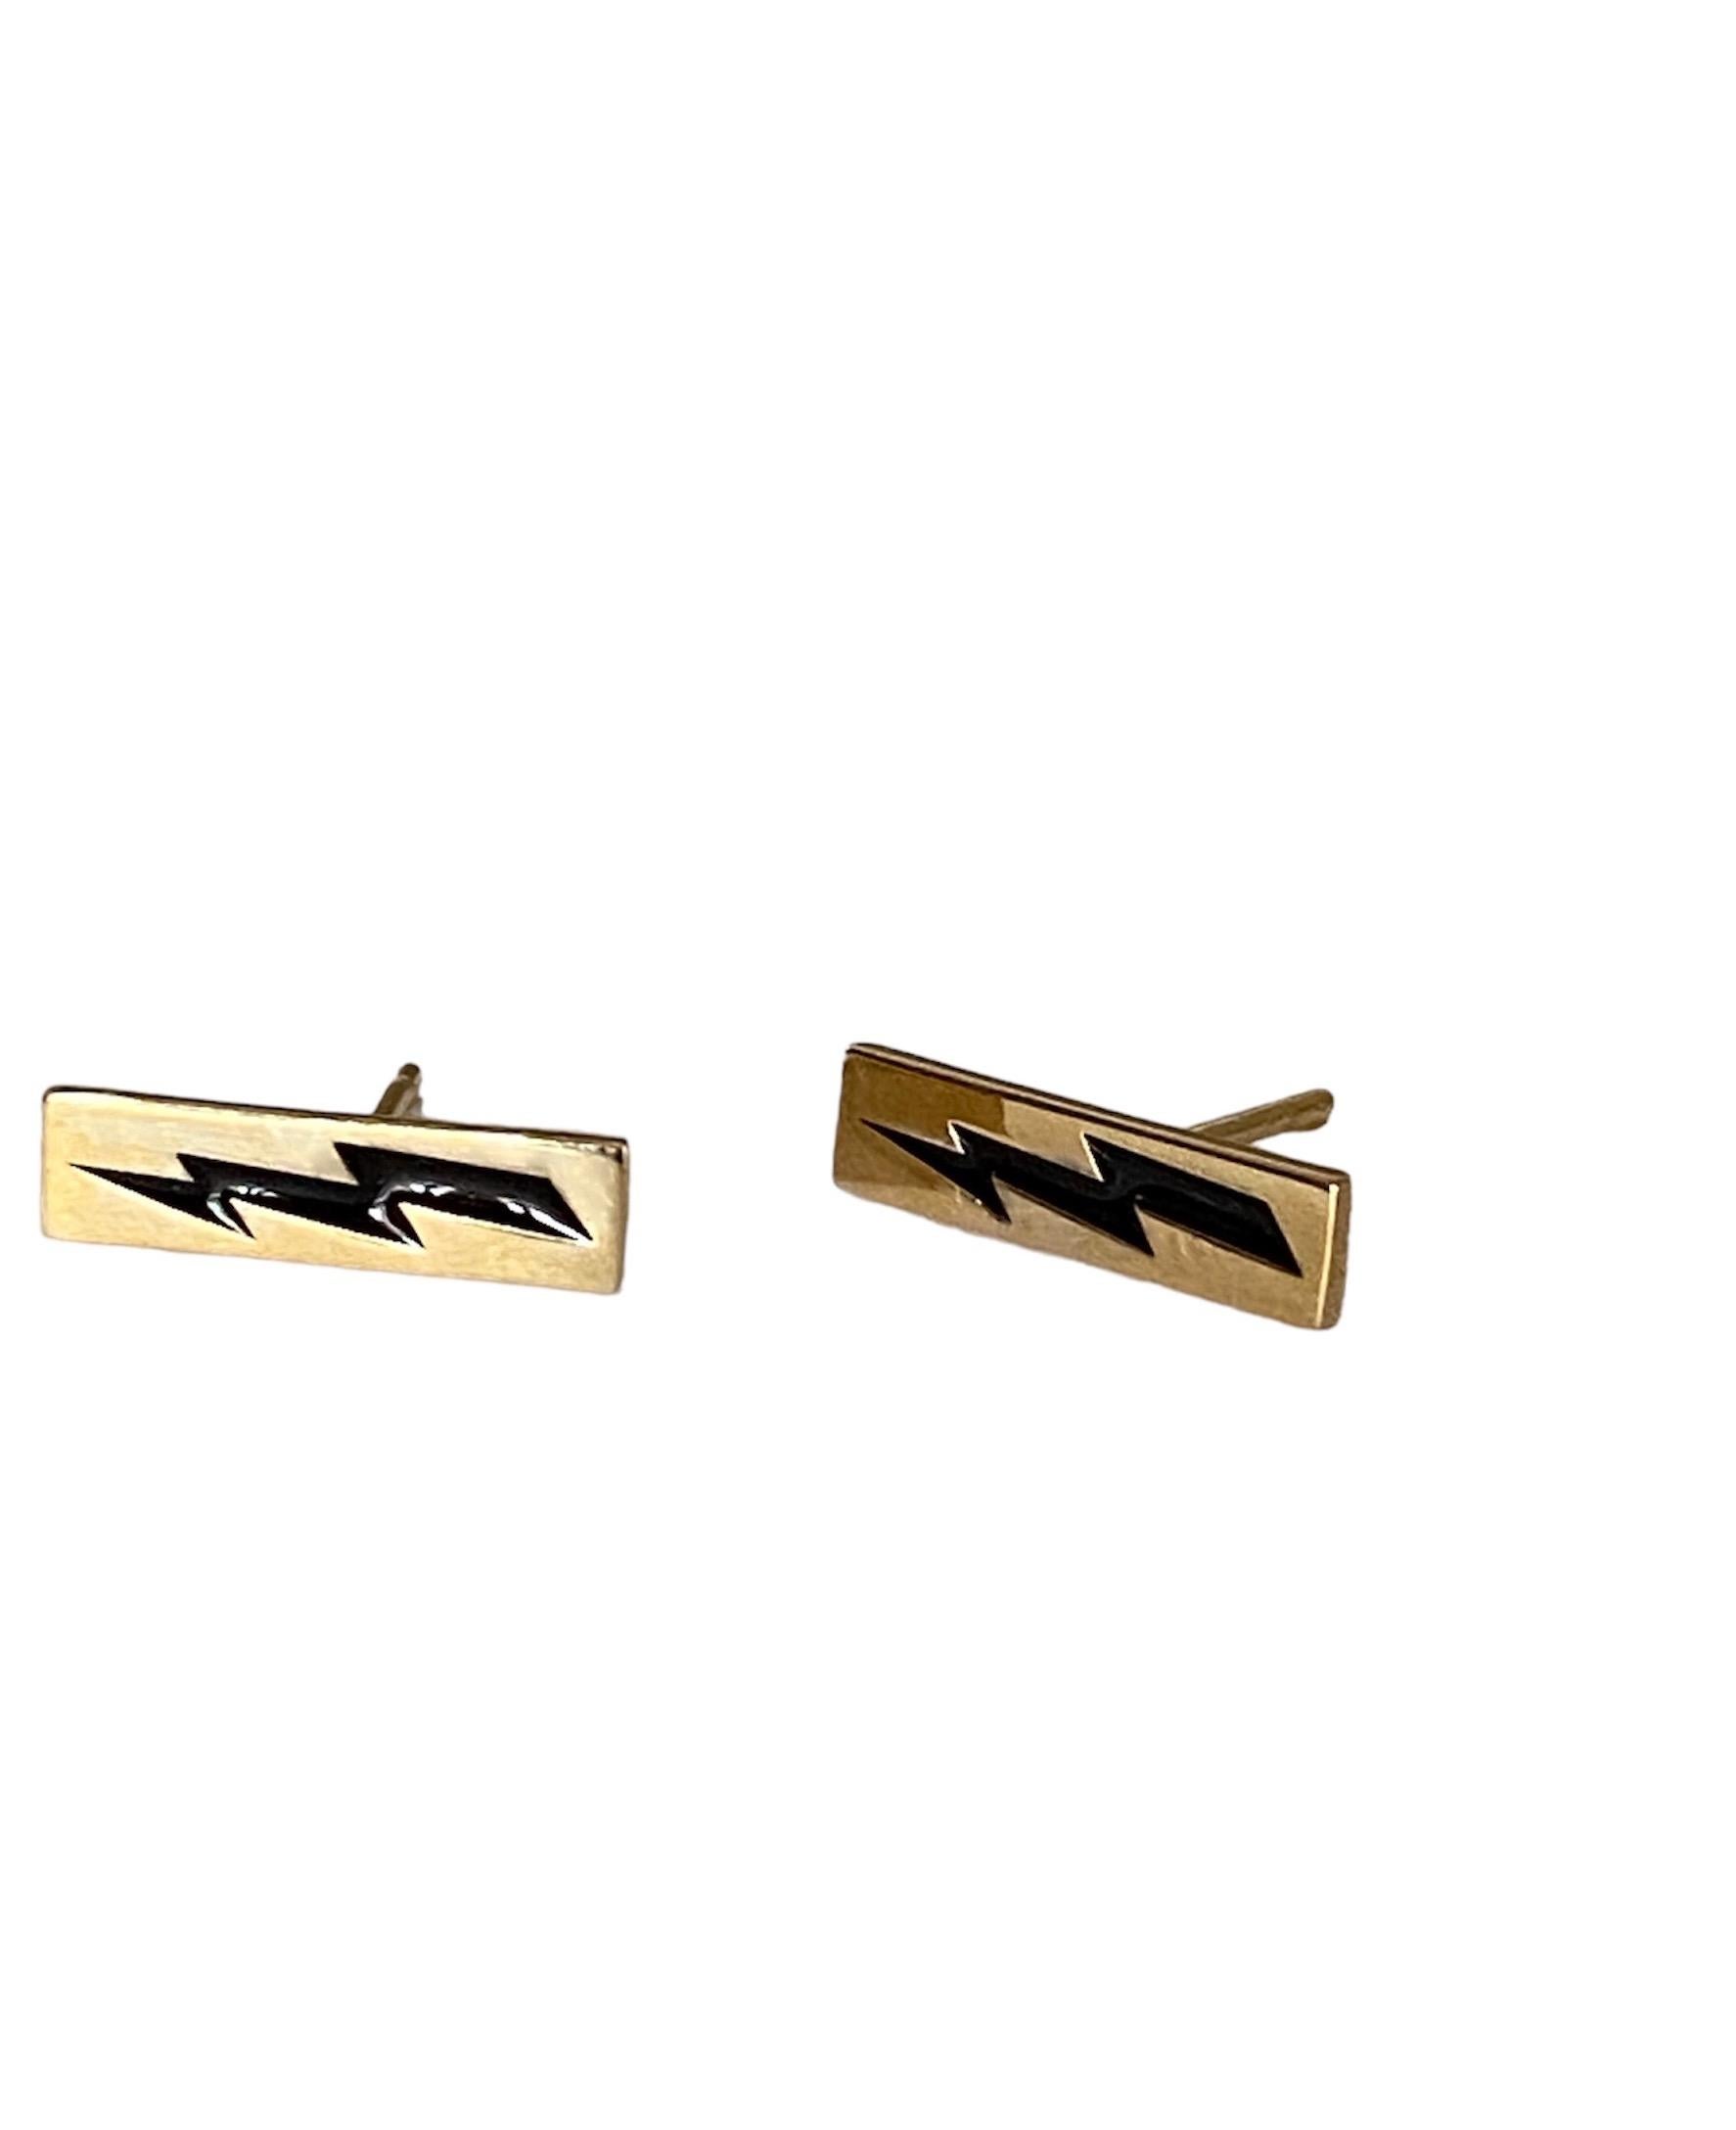 Rossella Ugolini Unisex Lightning Bolt Man Earrings Gold Black Enamel  For Sale 2